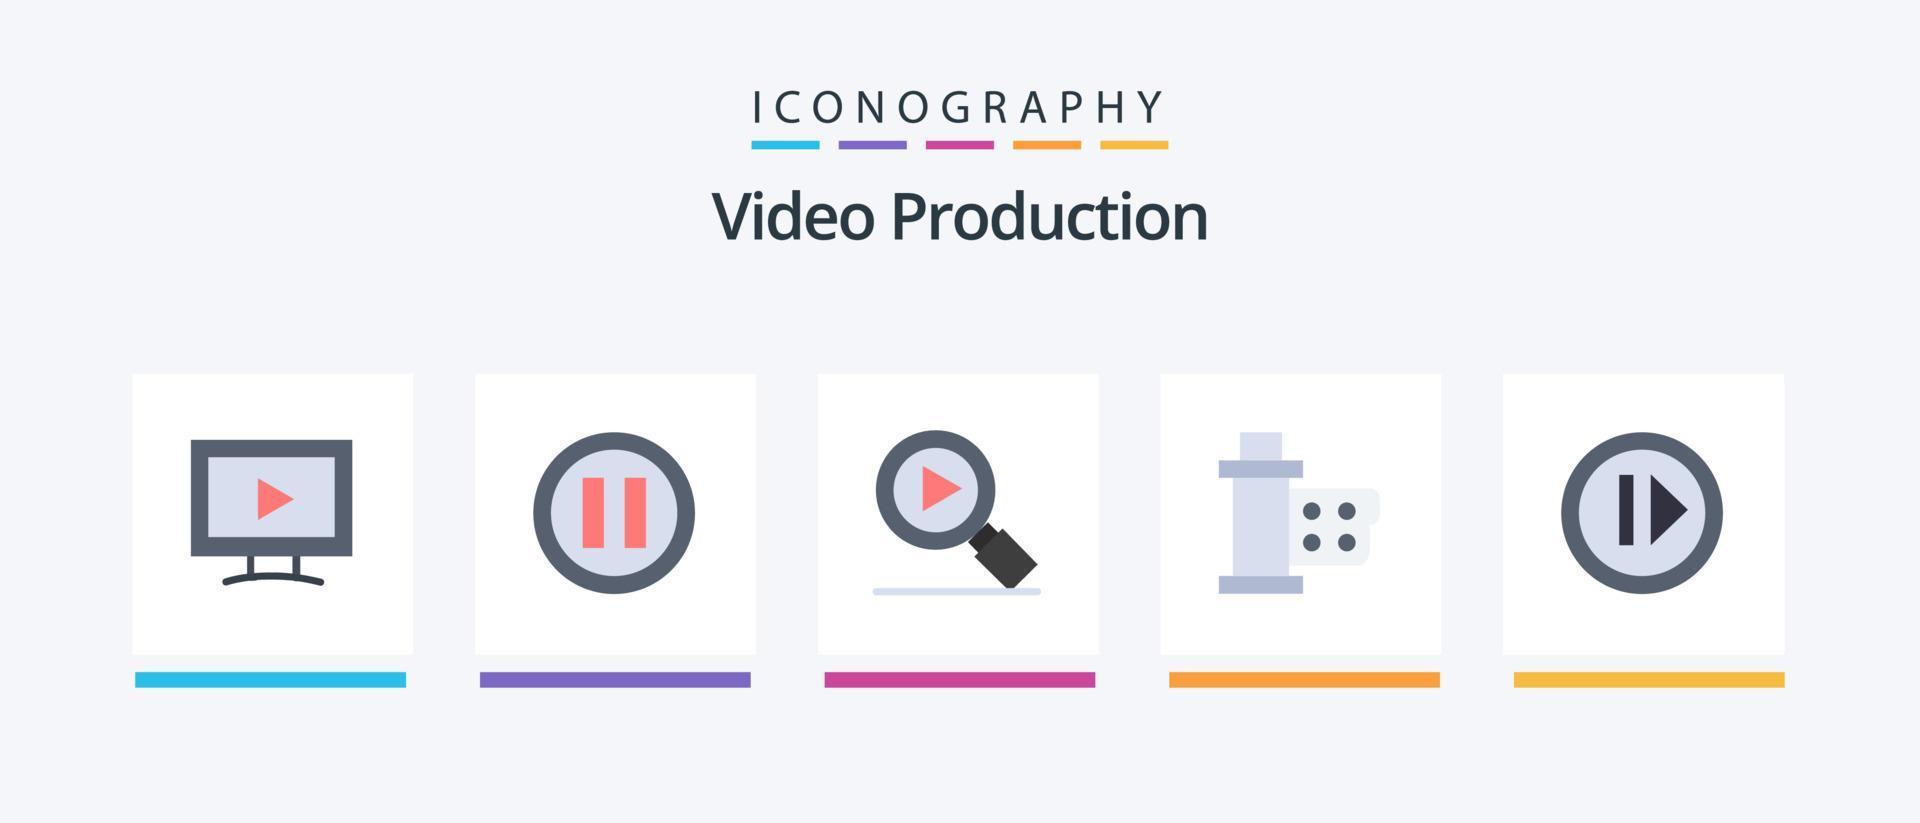 produção de vídeo flat 5 icon pack incluindo mídia. áudio. procurar. carretel. filme. design de ícones criativos vetor